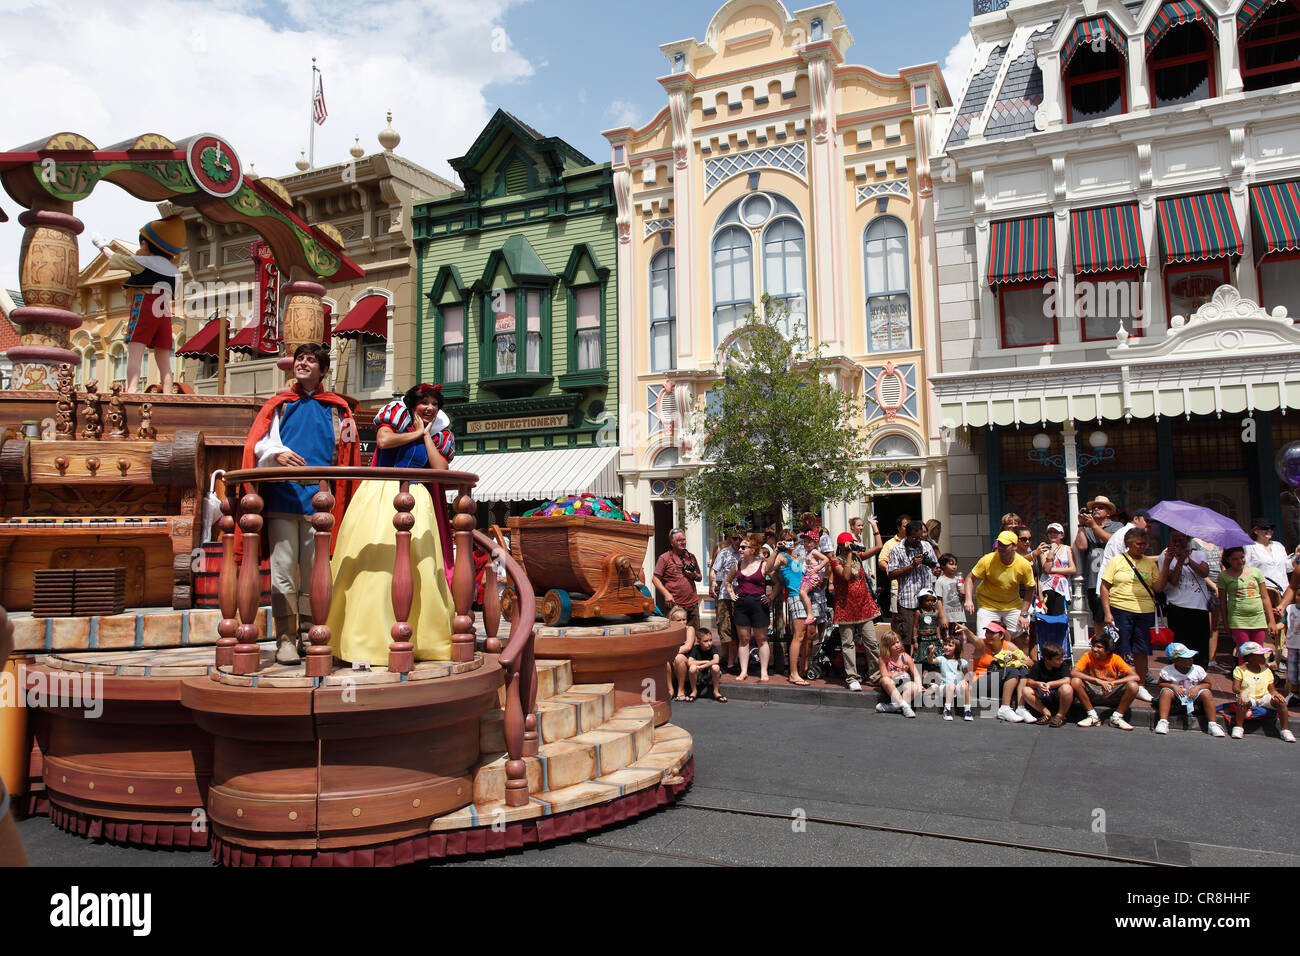 Snow White Float at Disney World, Orlando Stock Photo